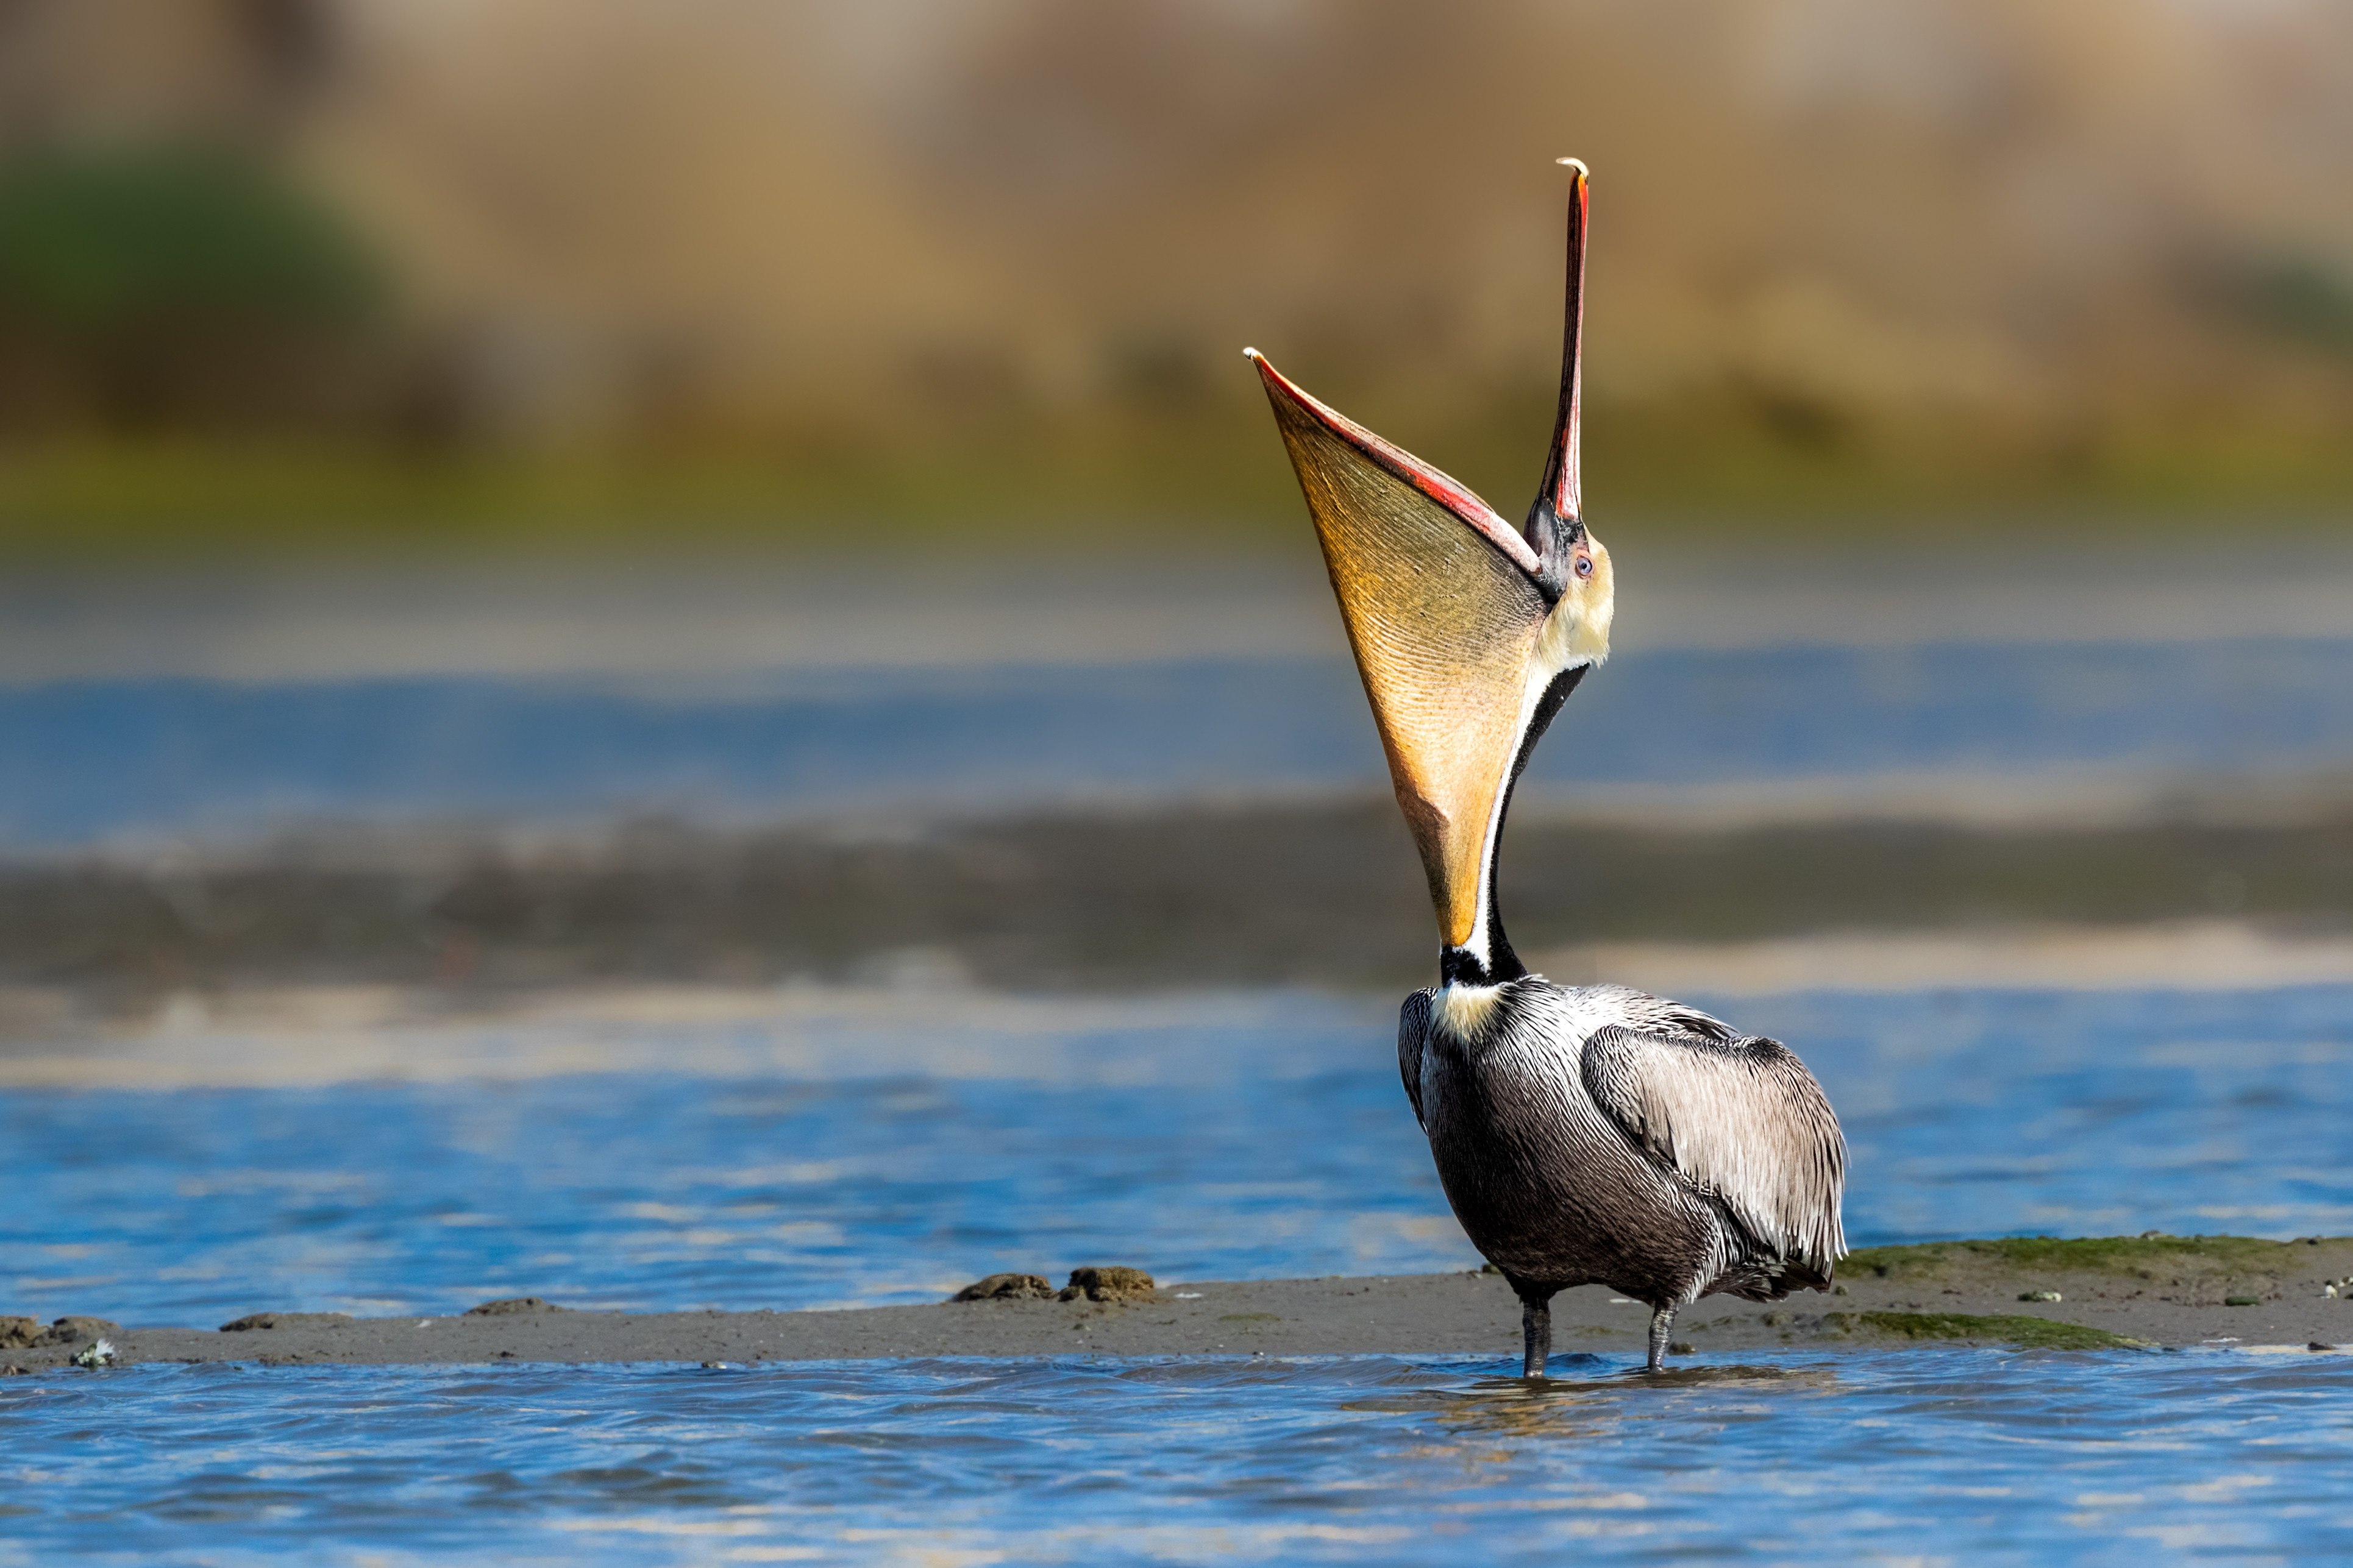 Пеликан ловит рыбу. Пеликан мешконос. Пеликан водоплавающая птица. Пеликан Южная Америка. Клюв пеликана.